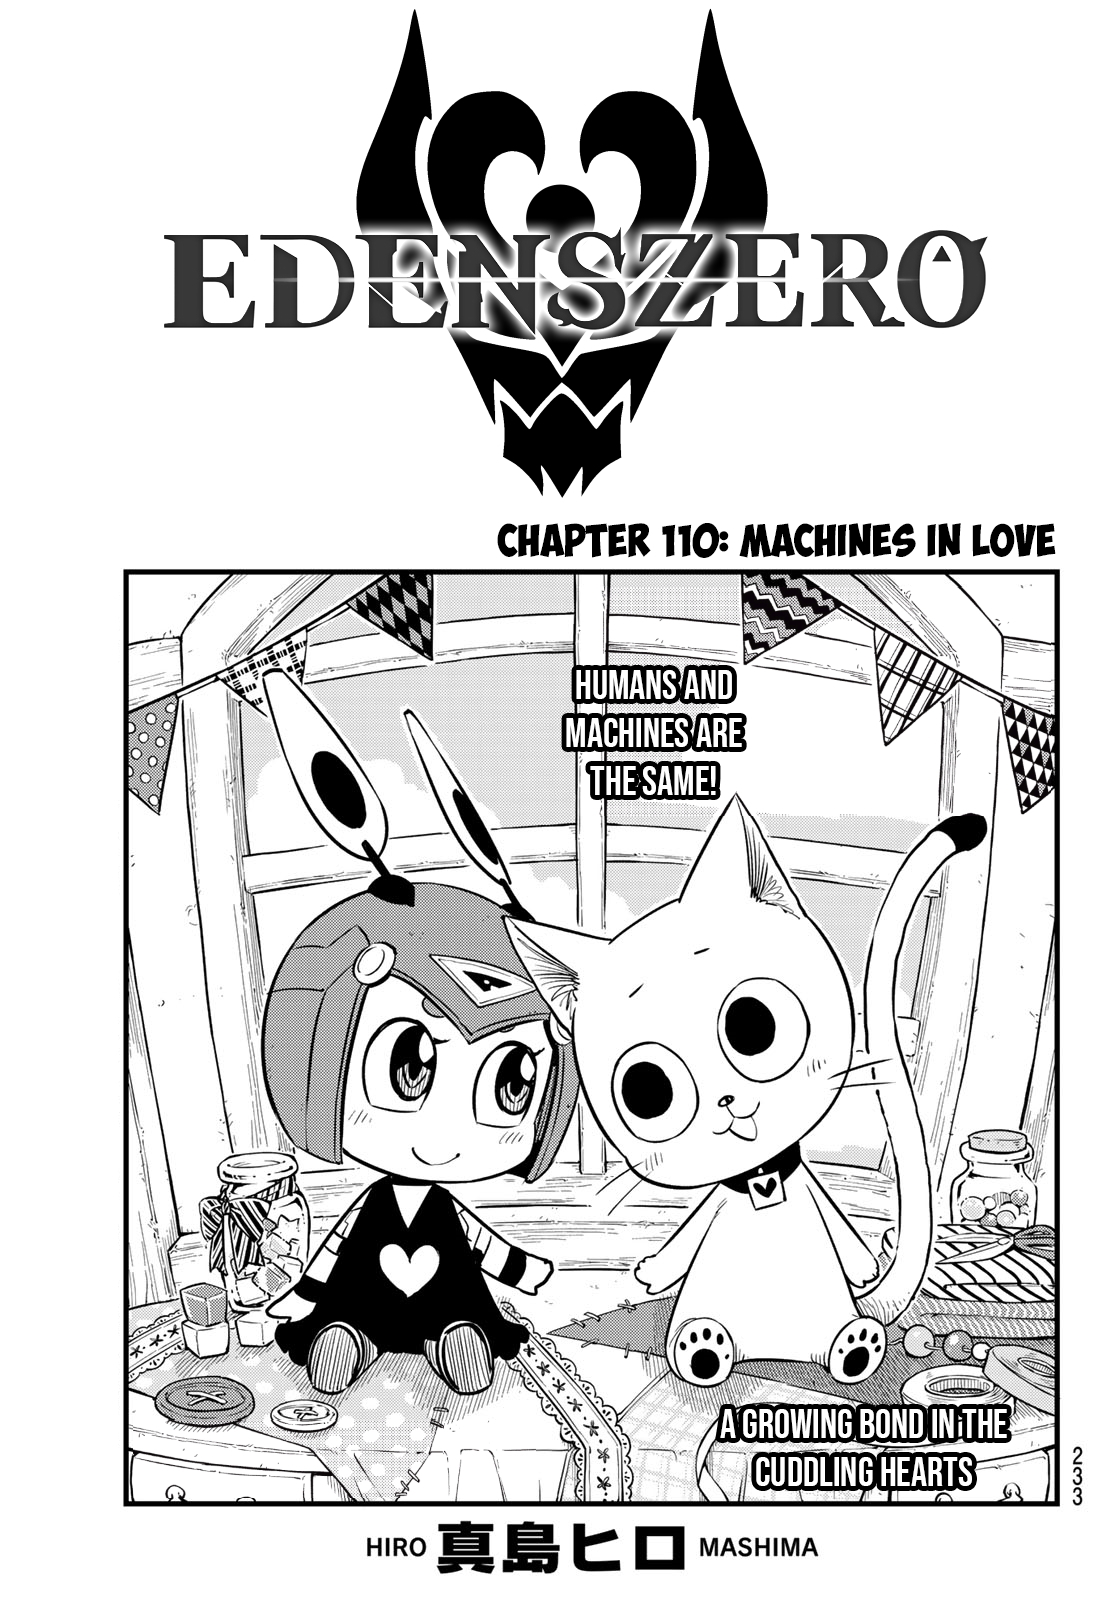 Edens Zero Ch. 110 Machines in Love